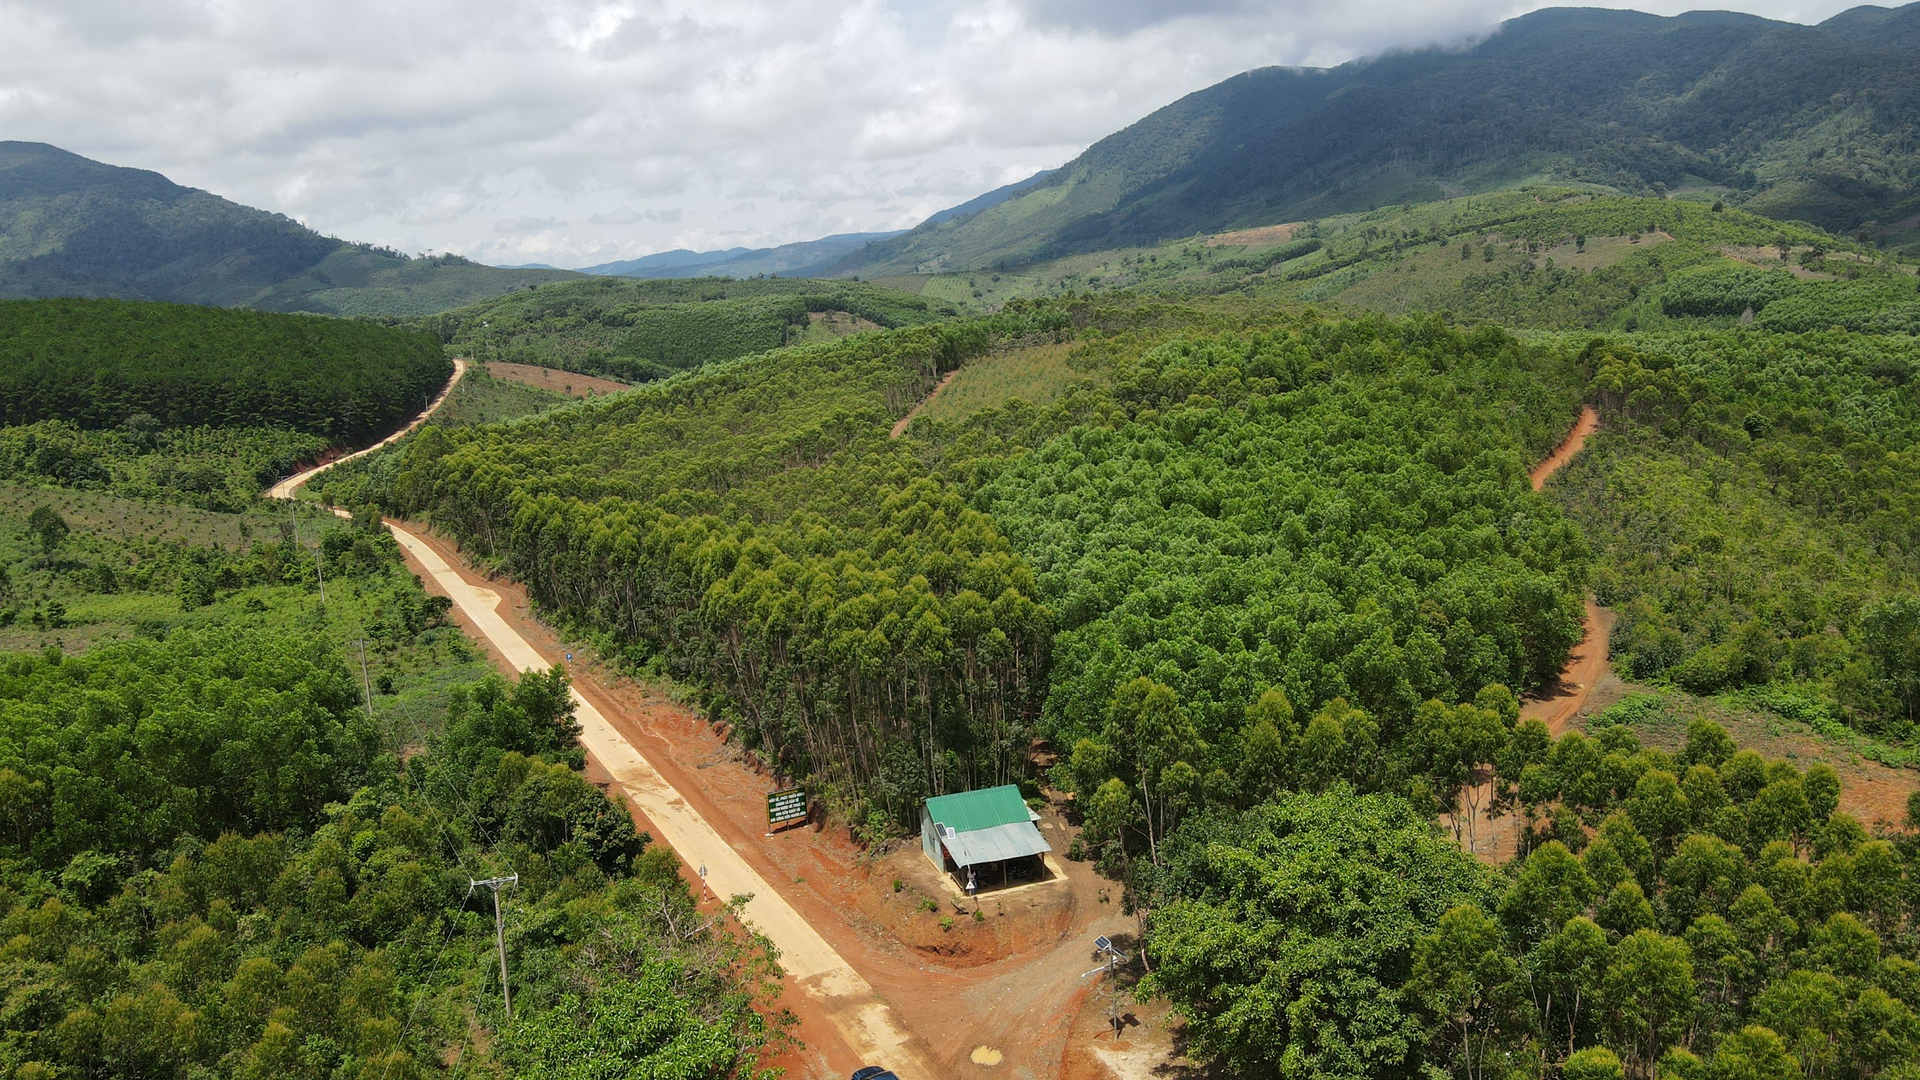 Việc lắp đặt camera giám sát, phần nào giúp những khu rừng hạn chế tình trạng khai thác gỗ trái phép. Ảnh: Tuấn Anh.